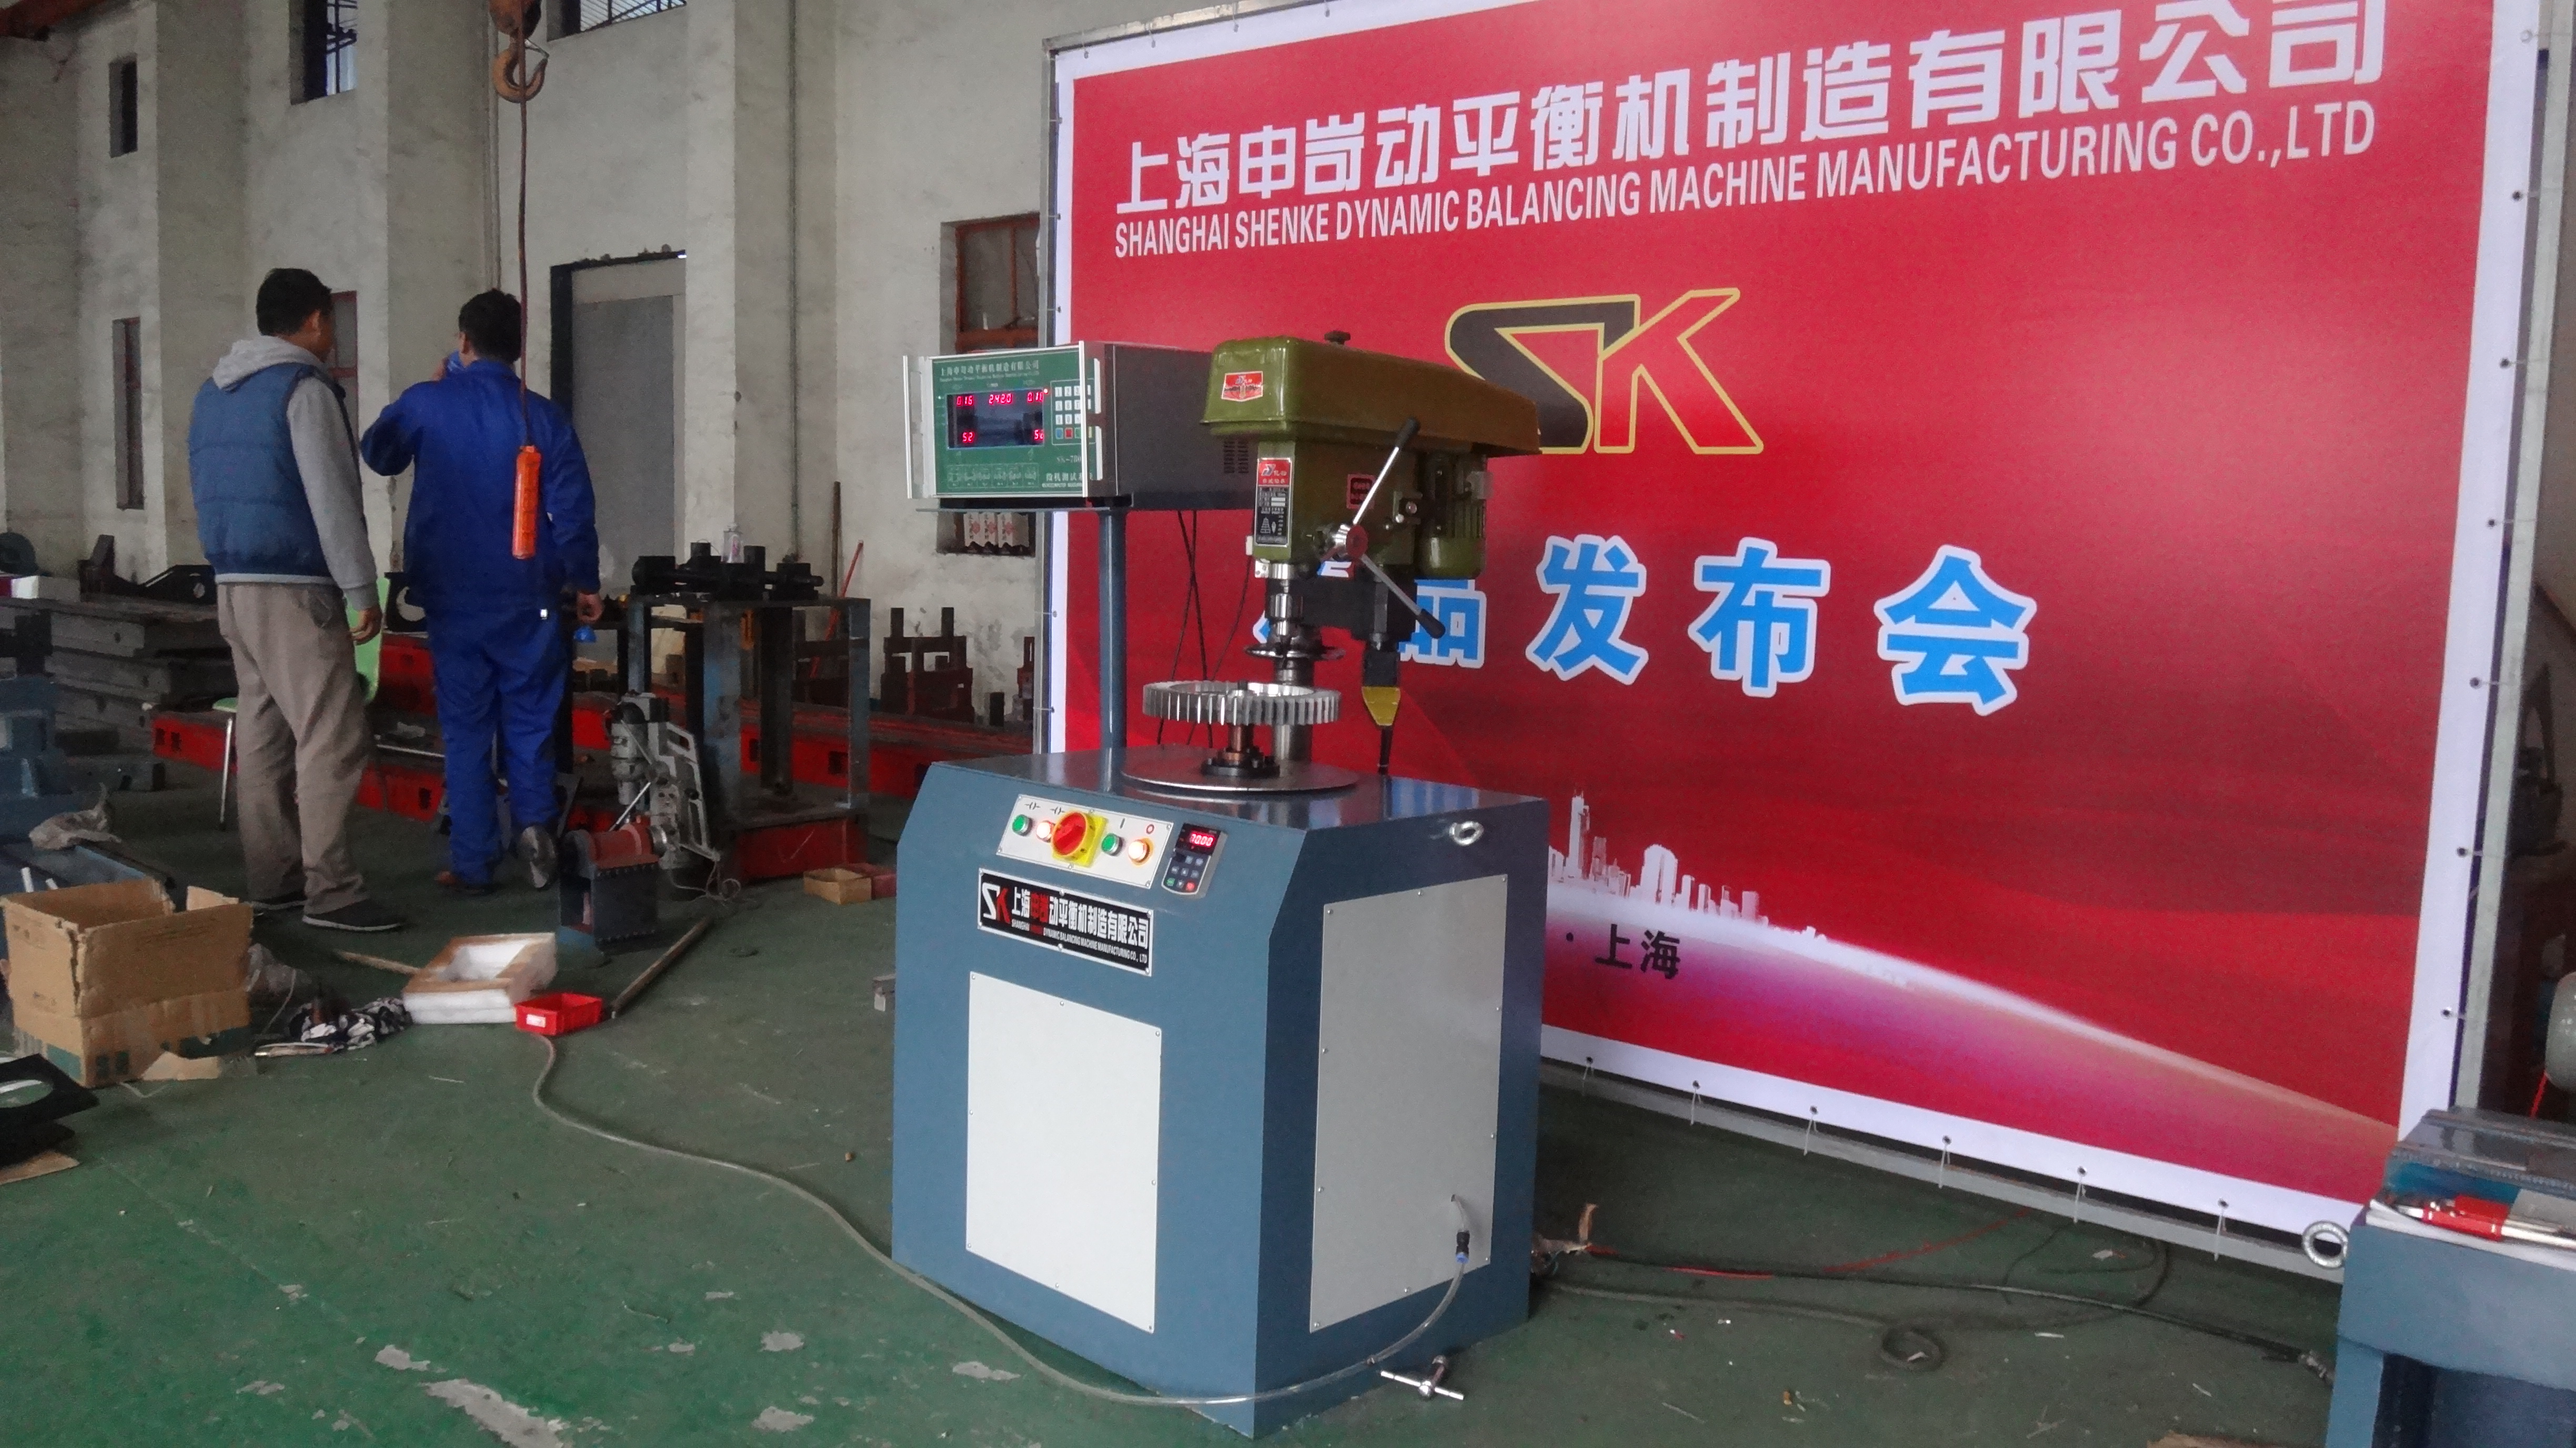 上海市立式动平衡机 力抵消功能 质量好厂家